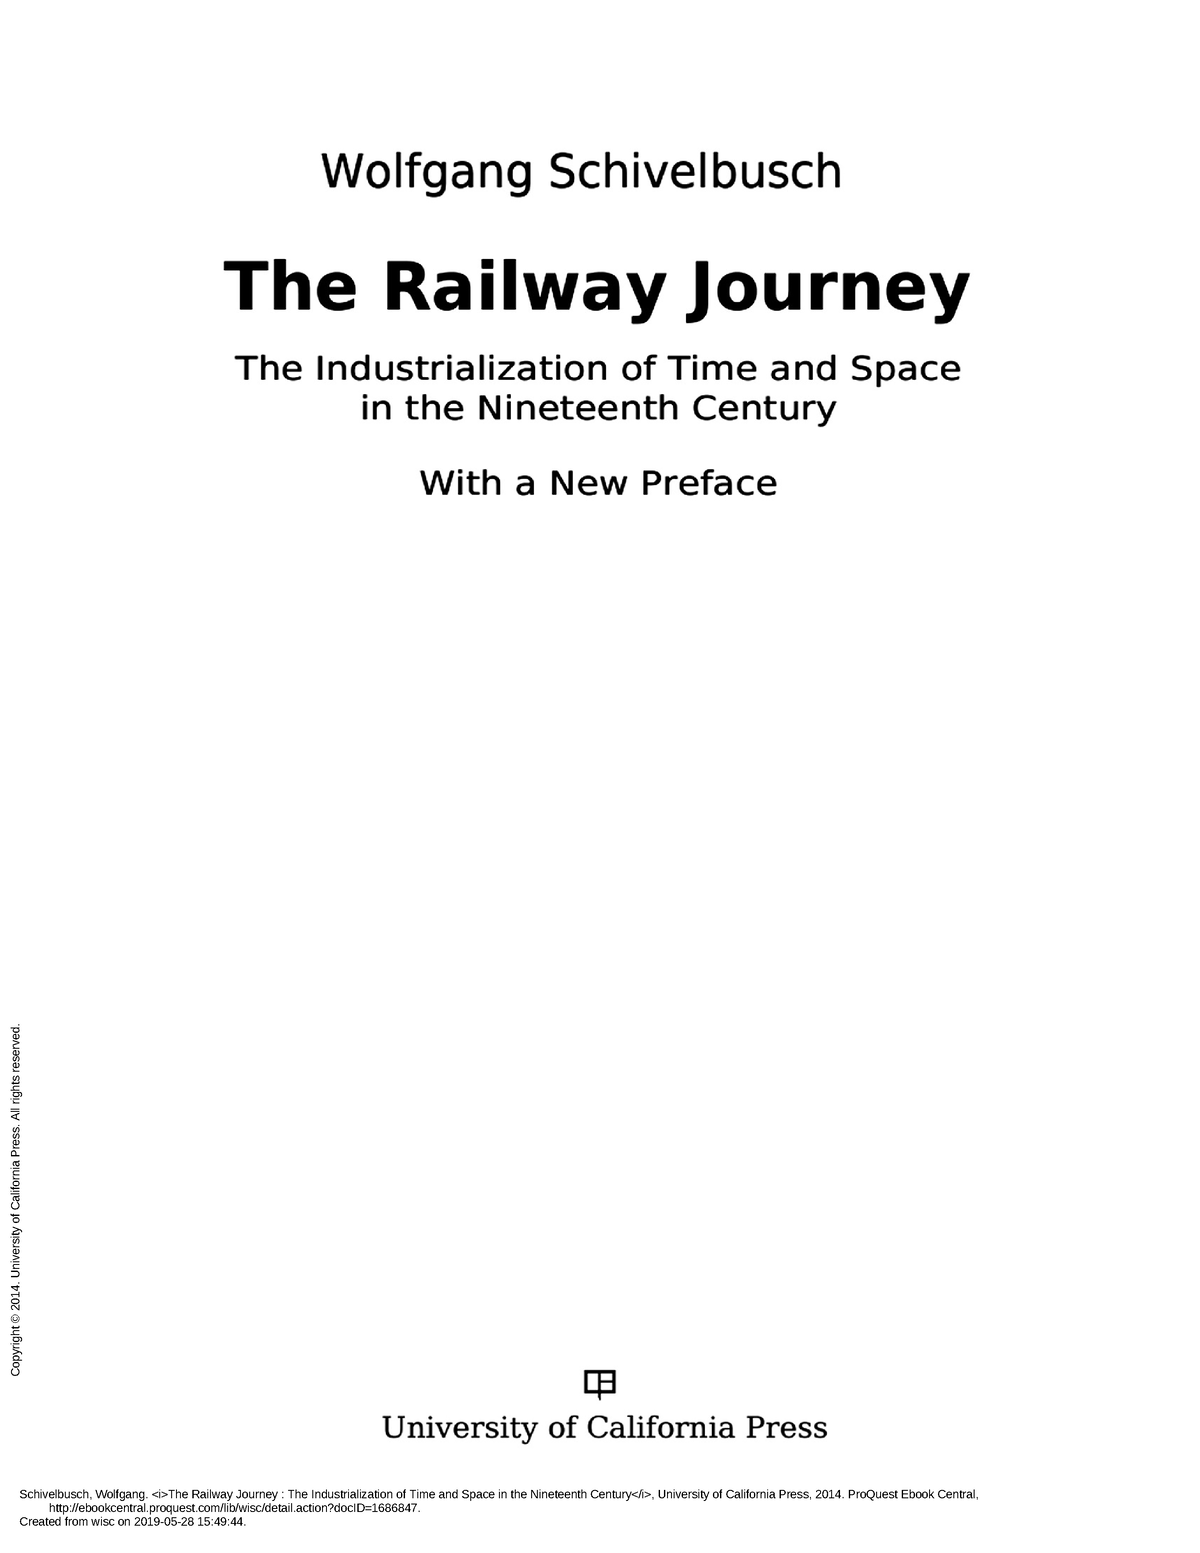 schivelbusch railway journey pdf